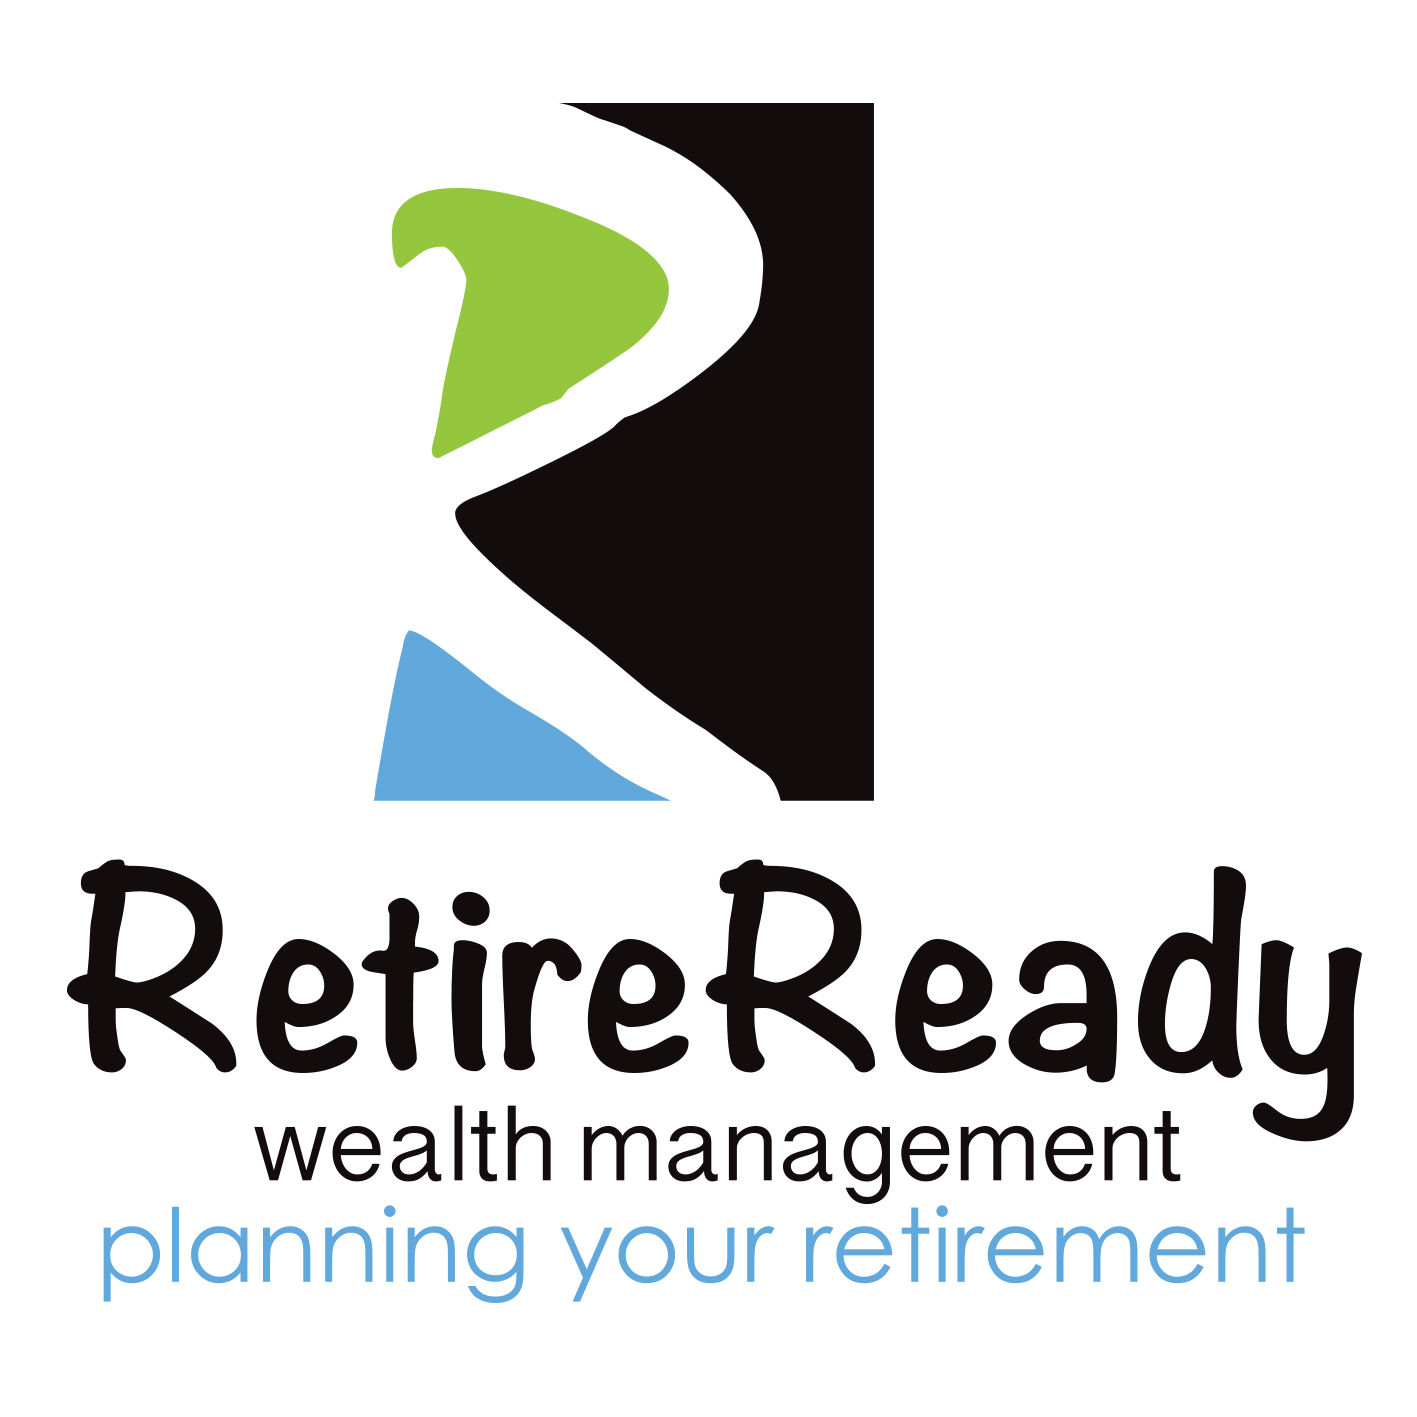 Western Australia, Australia : L’ agence Abundance Web Designs a aidé Retire Ready Wealth Management à développer son activité grâce au SEO et au marketing numérique